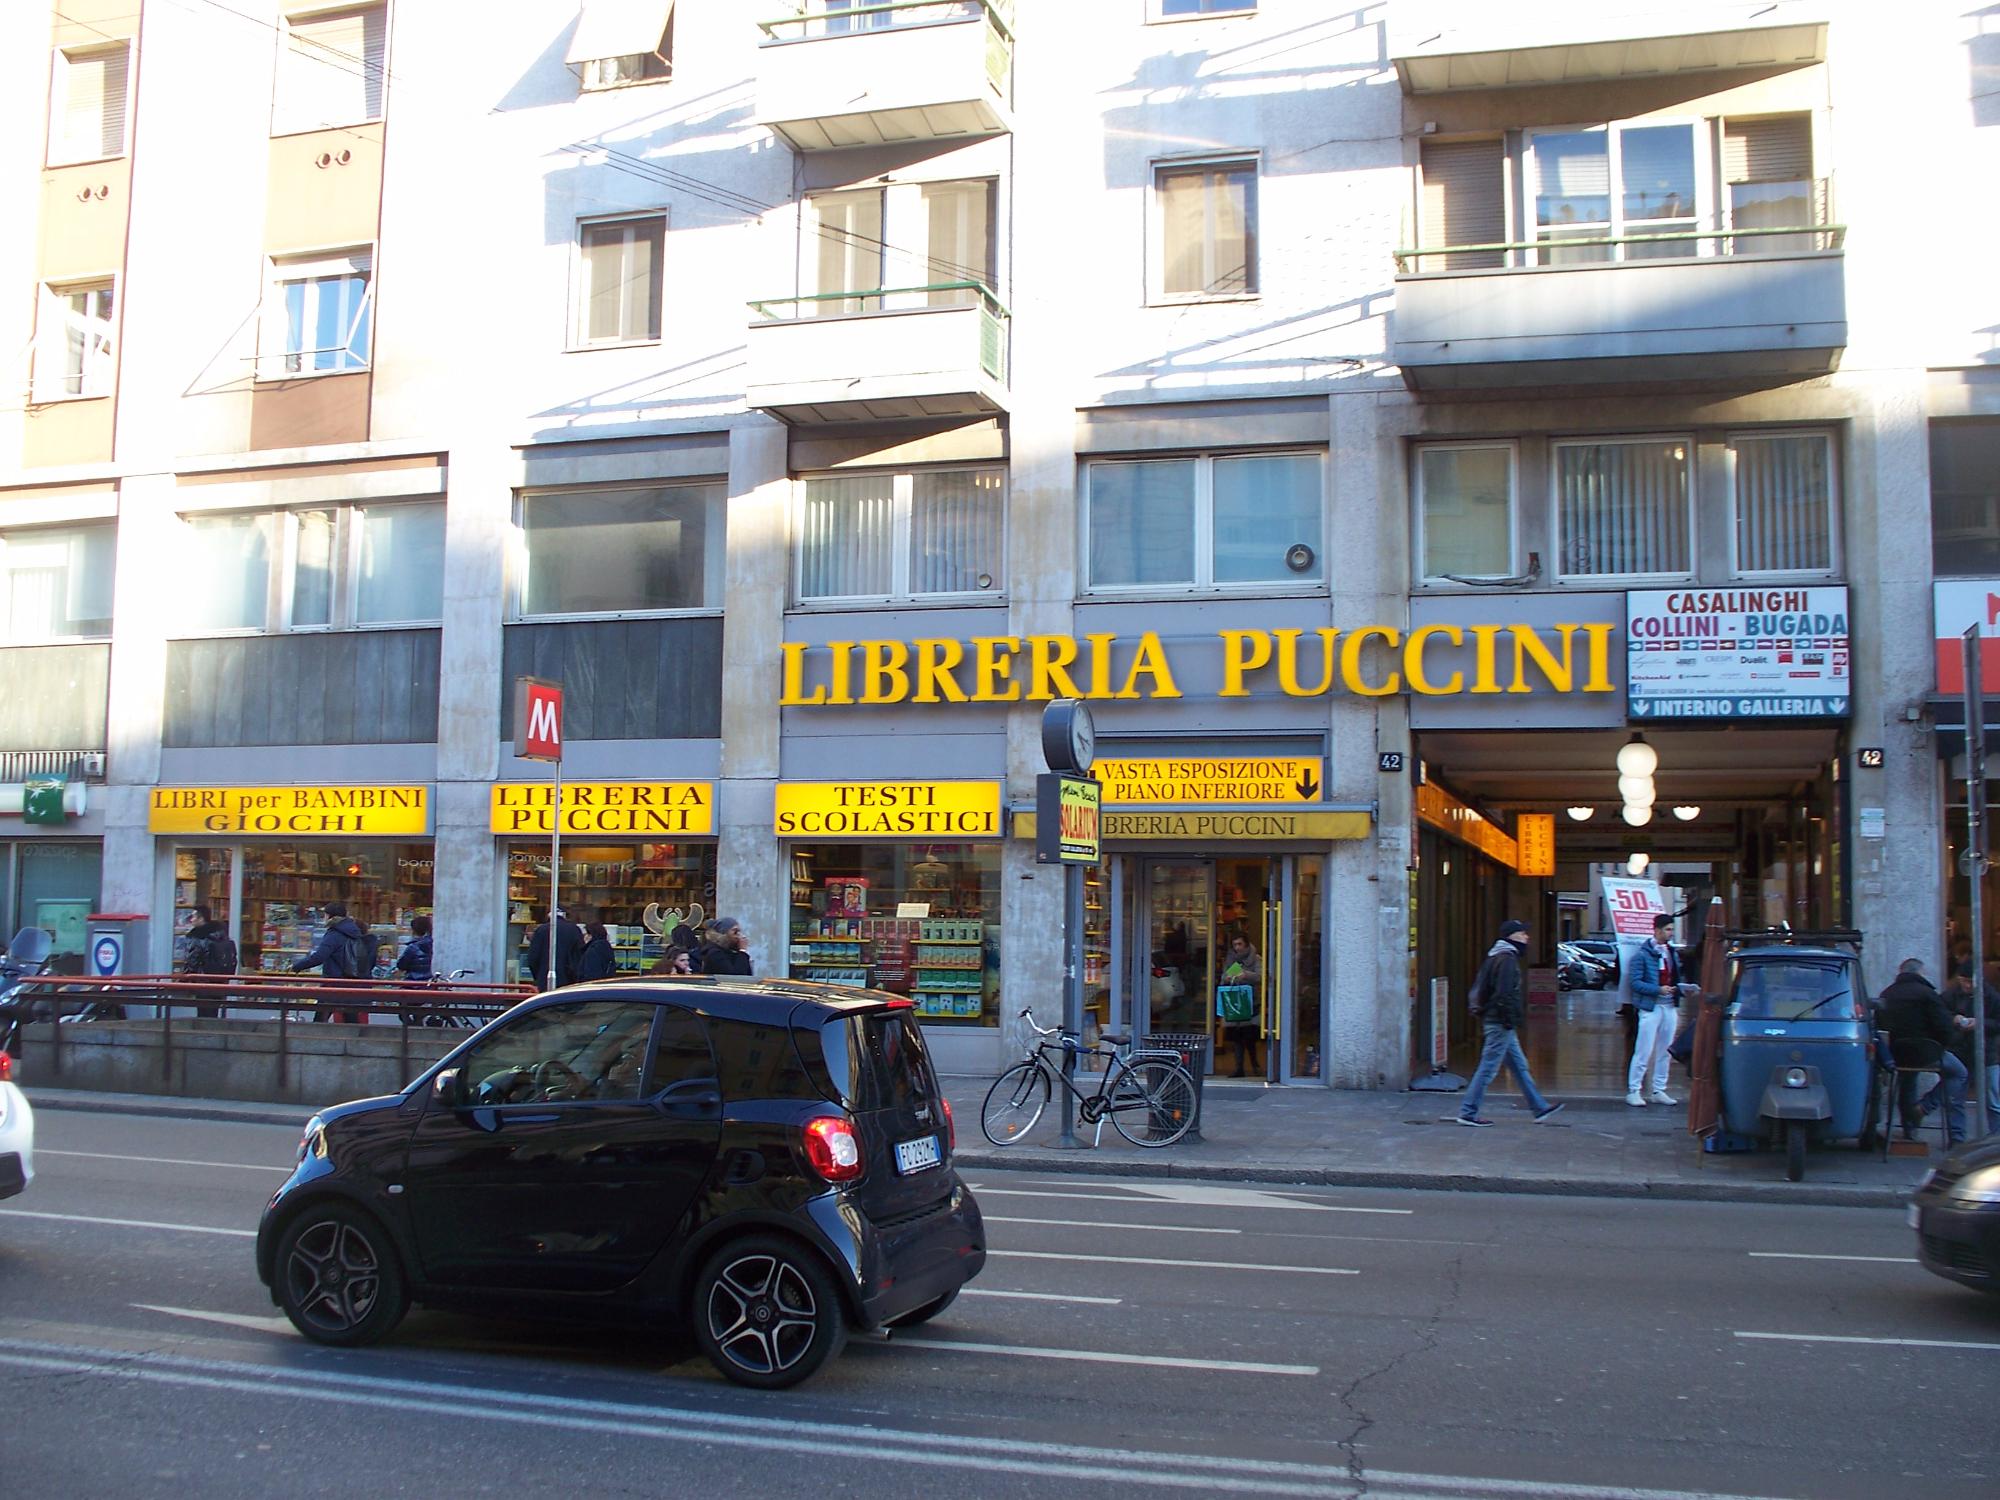 Libreria Puccini